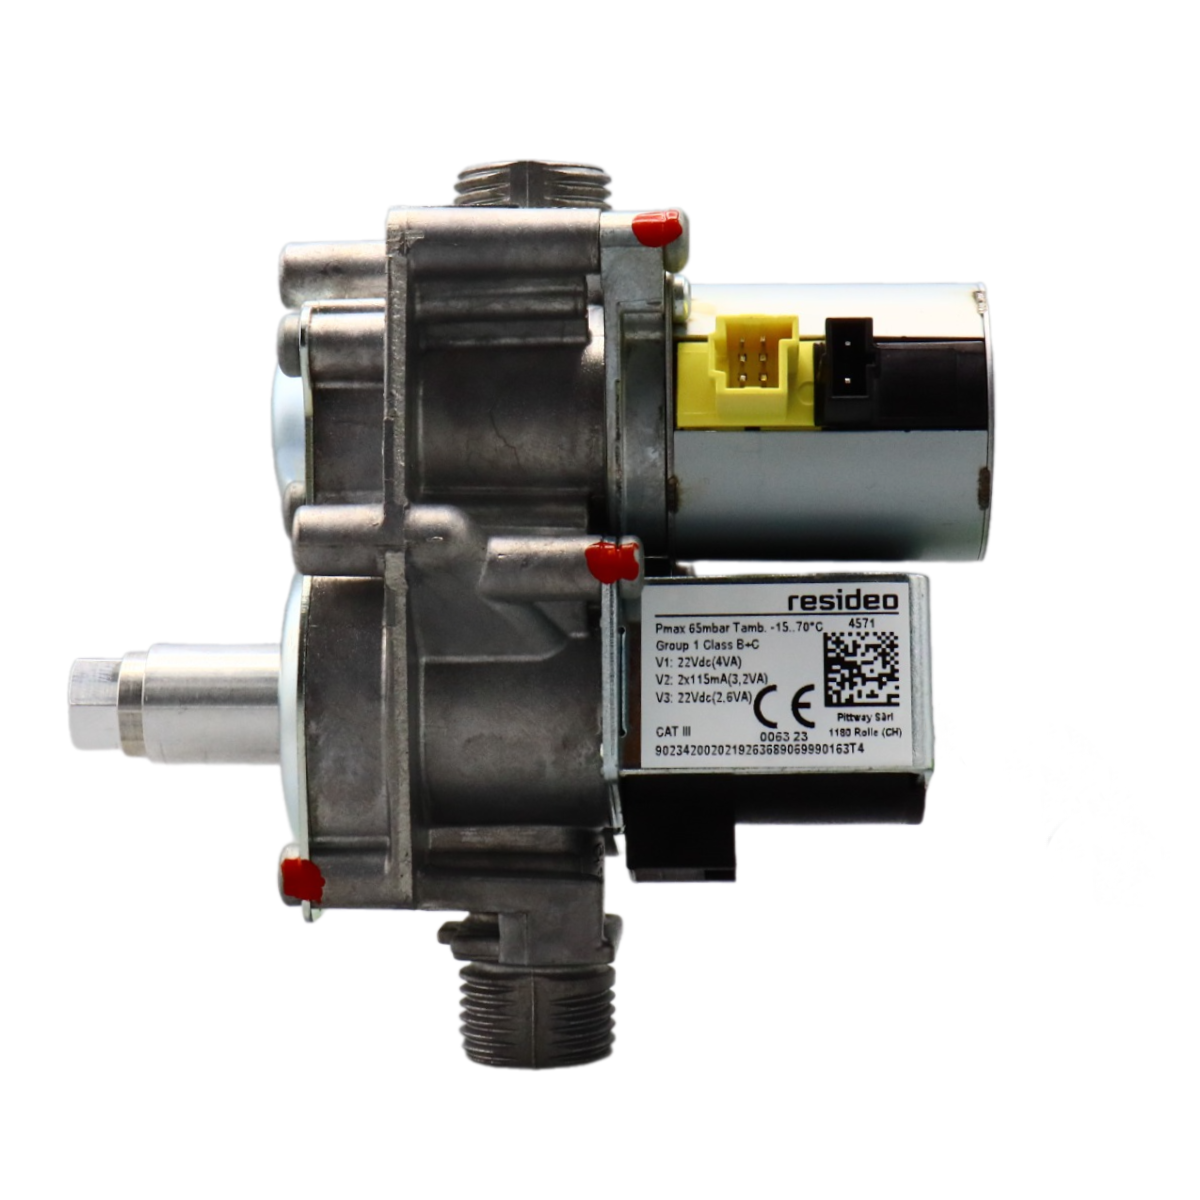 Газовый клапан VK8515MR4571U для котлов Protherm, Saunier Duval арт: 0020053968, 0020049296